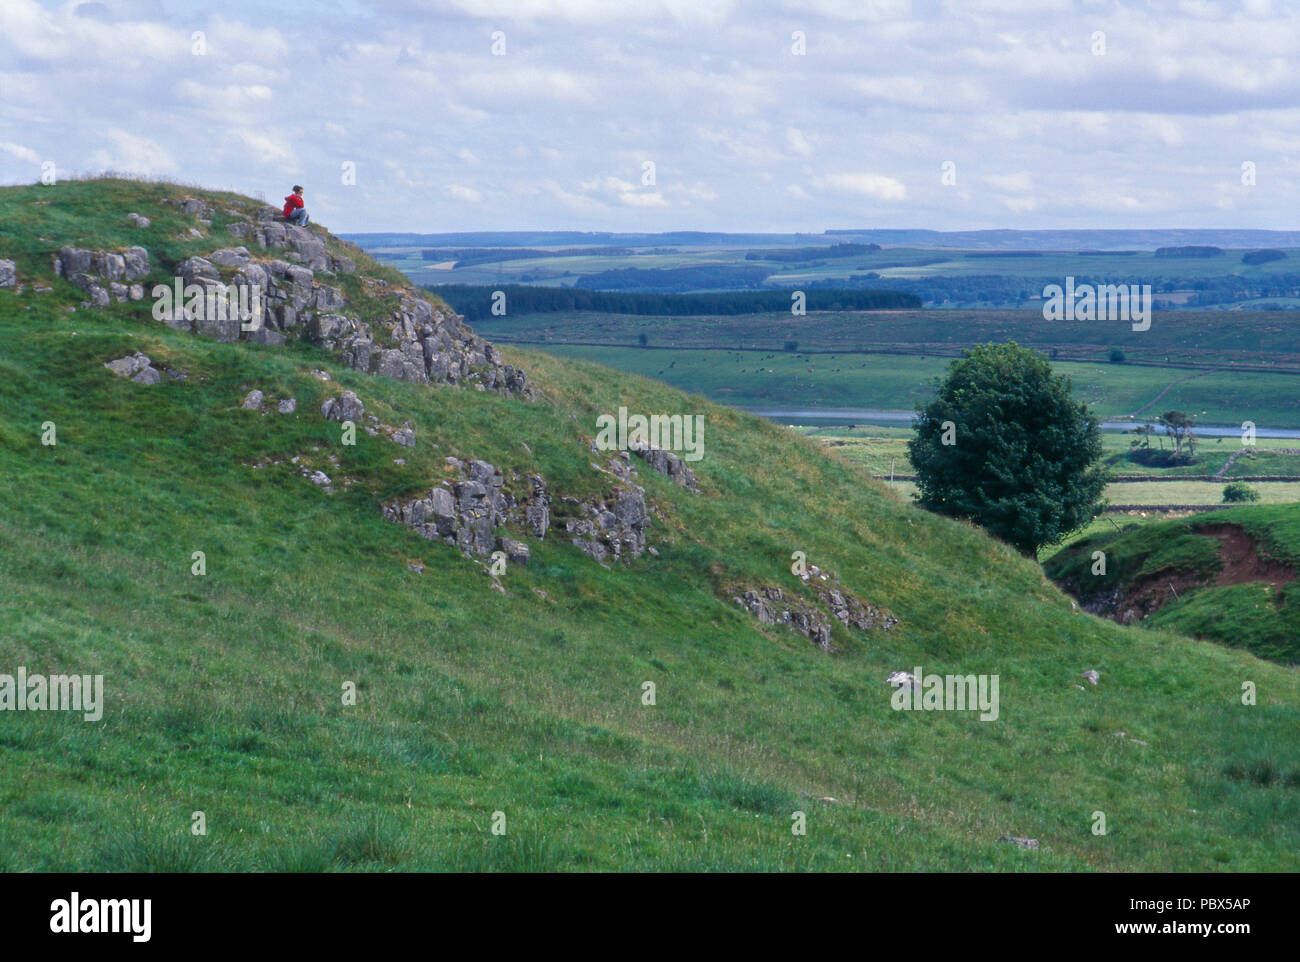 Girl randonneur sur un rocher surplombant les landes du Yorkshire, Angleterre. Photographie Banque D'Images